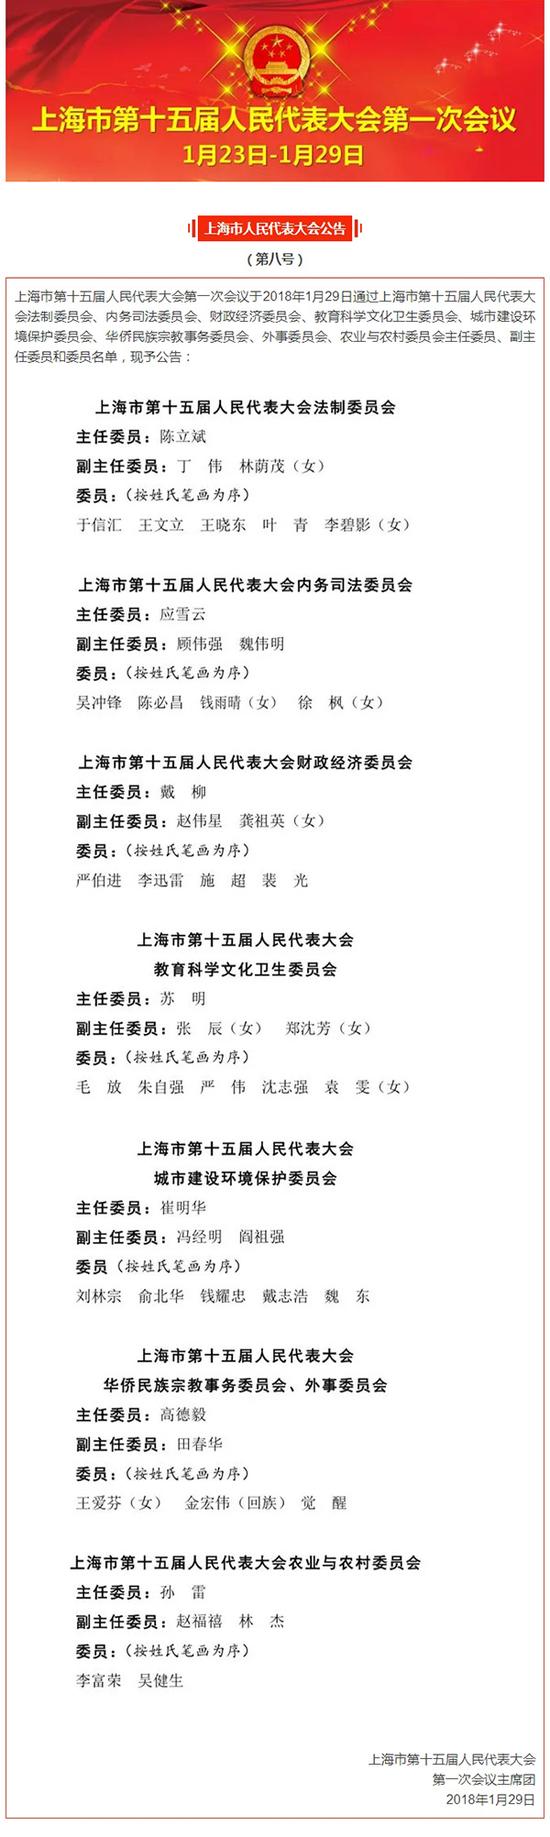 澎湃新闻:上海人大公布各专门委员会委员名单